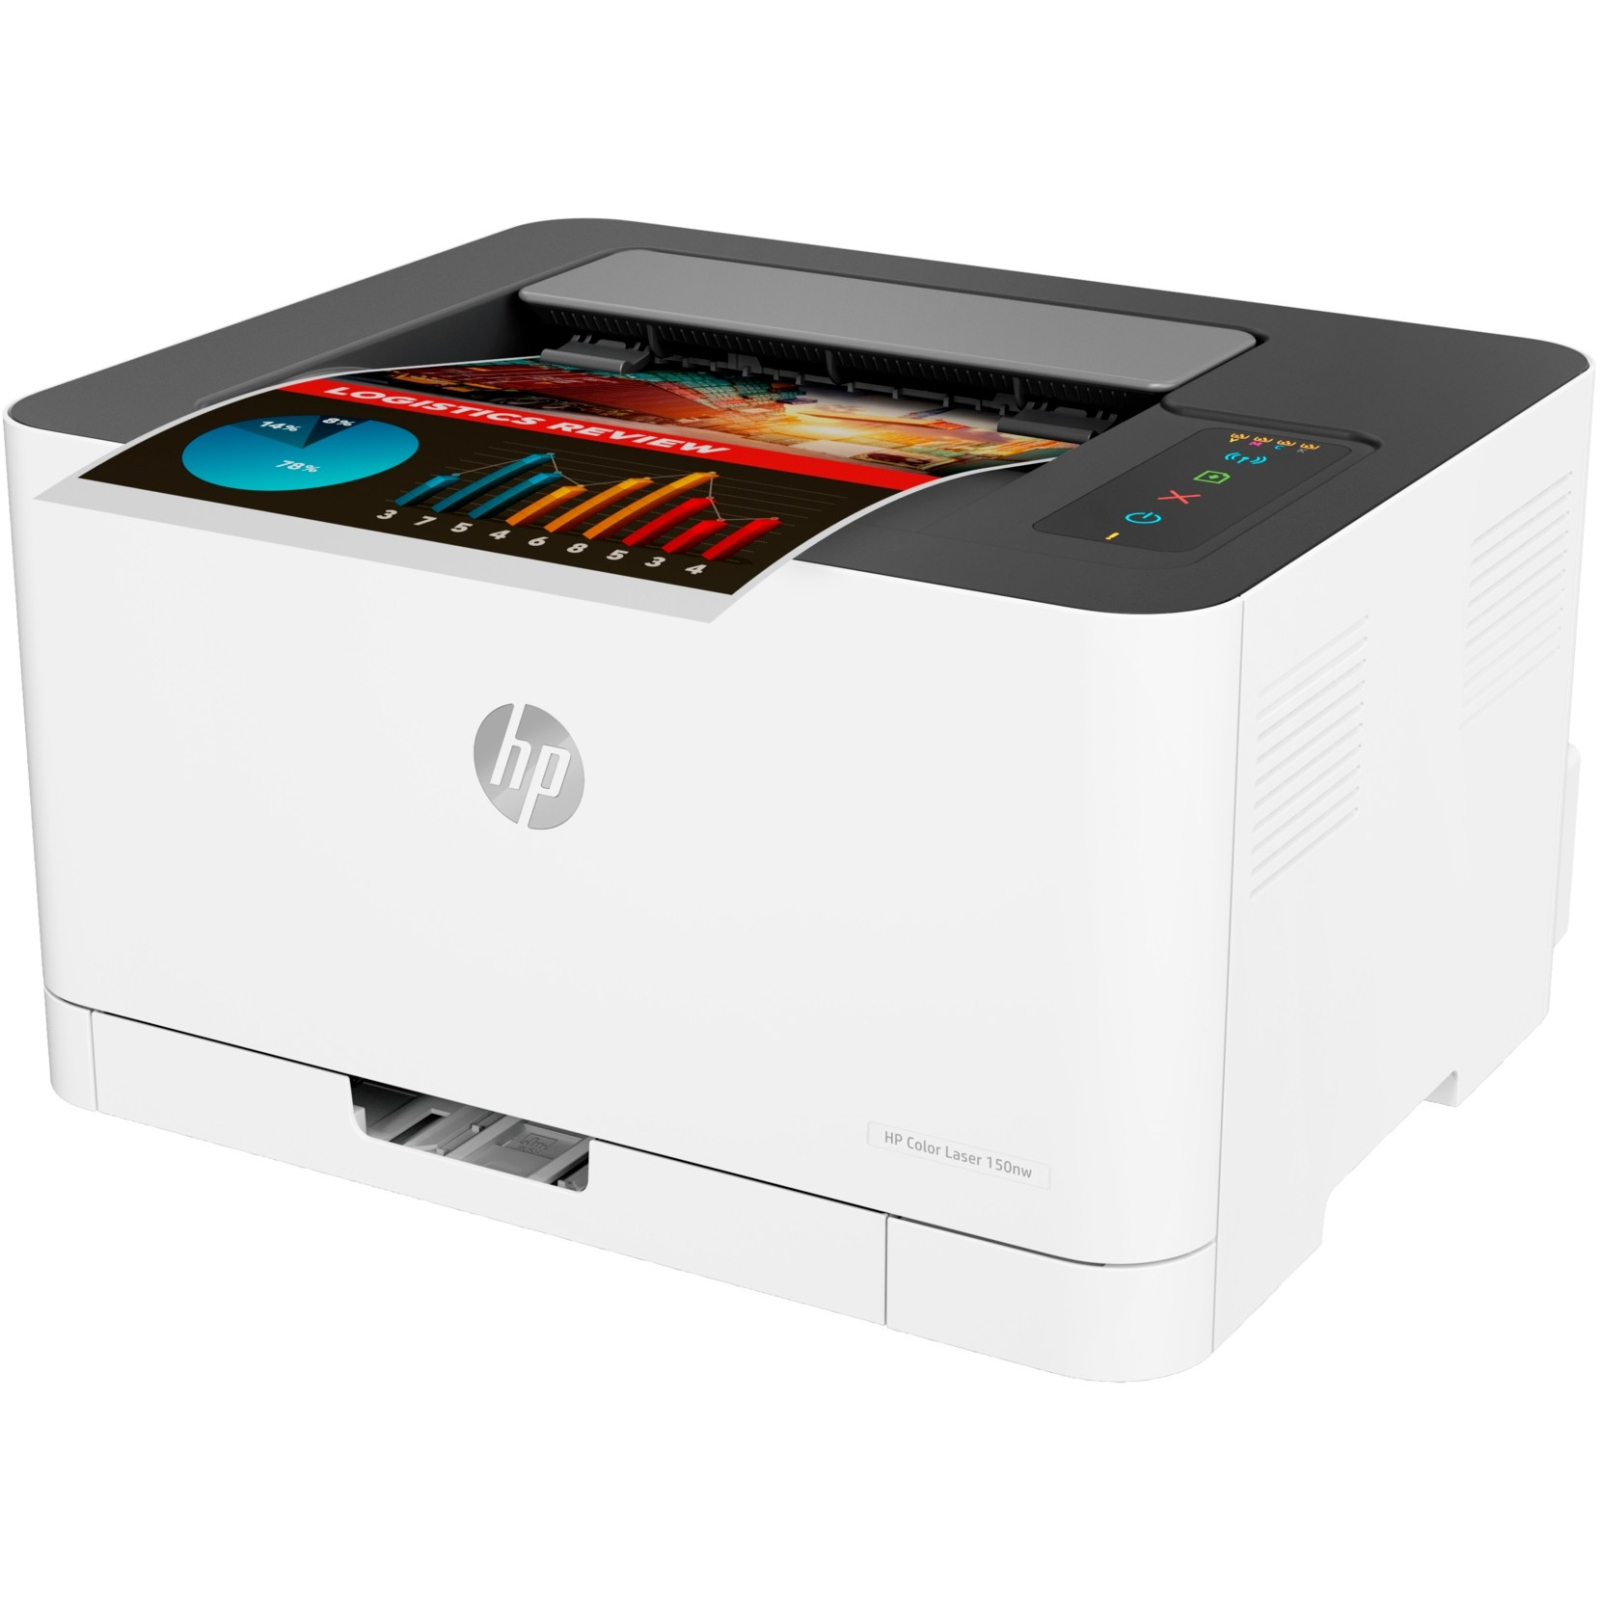 Лазерний принтер HP Color LaserJet 150nw с Wi-Fi (4ZB95A) зображення 3